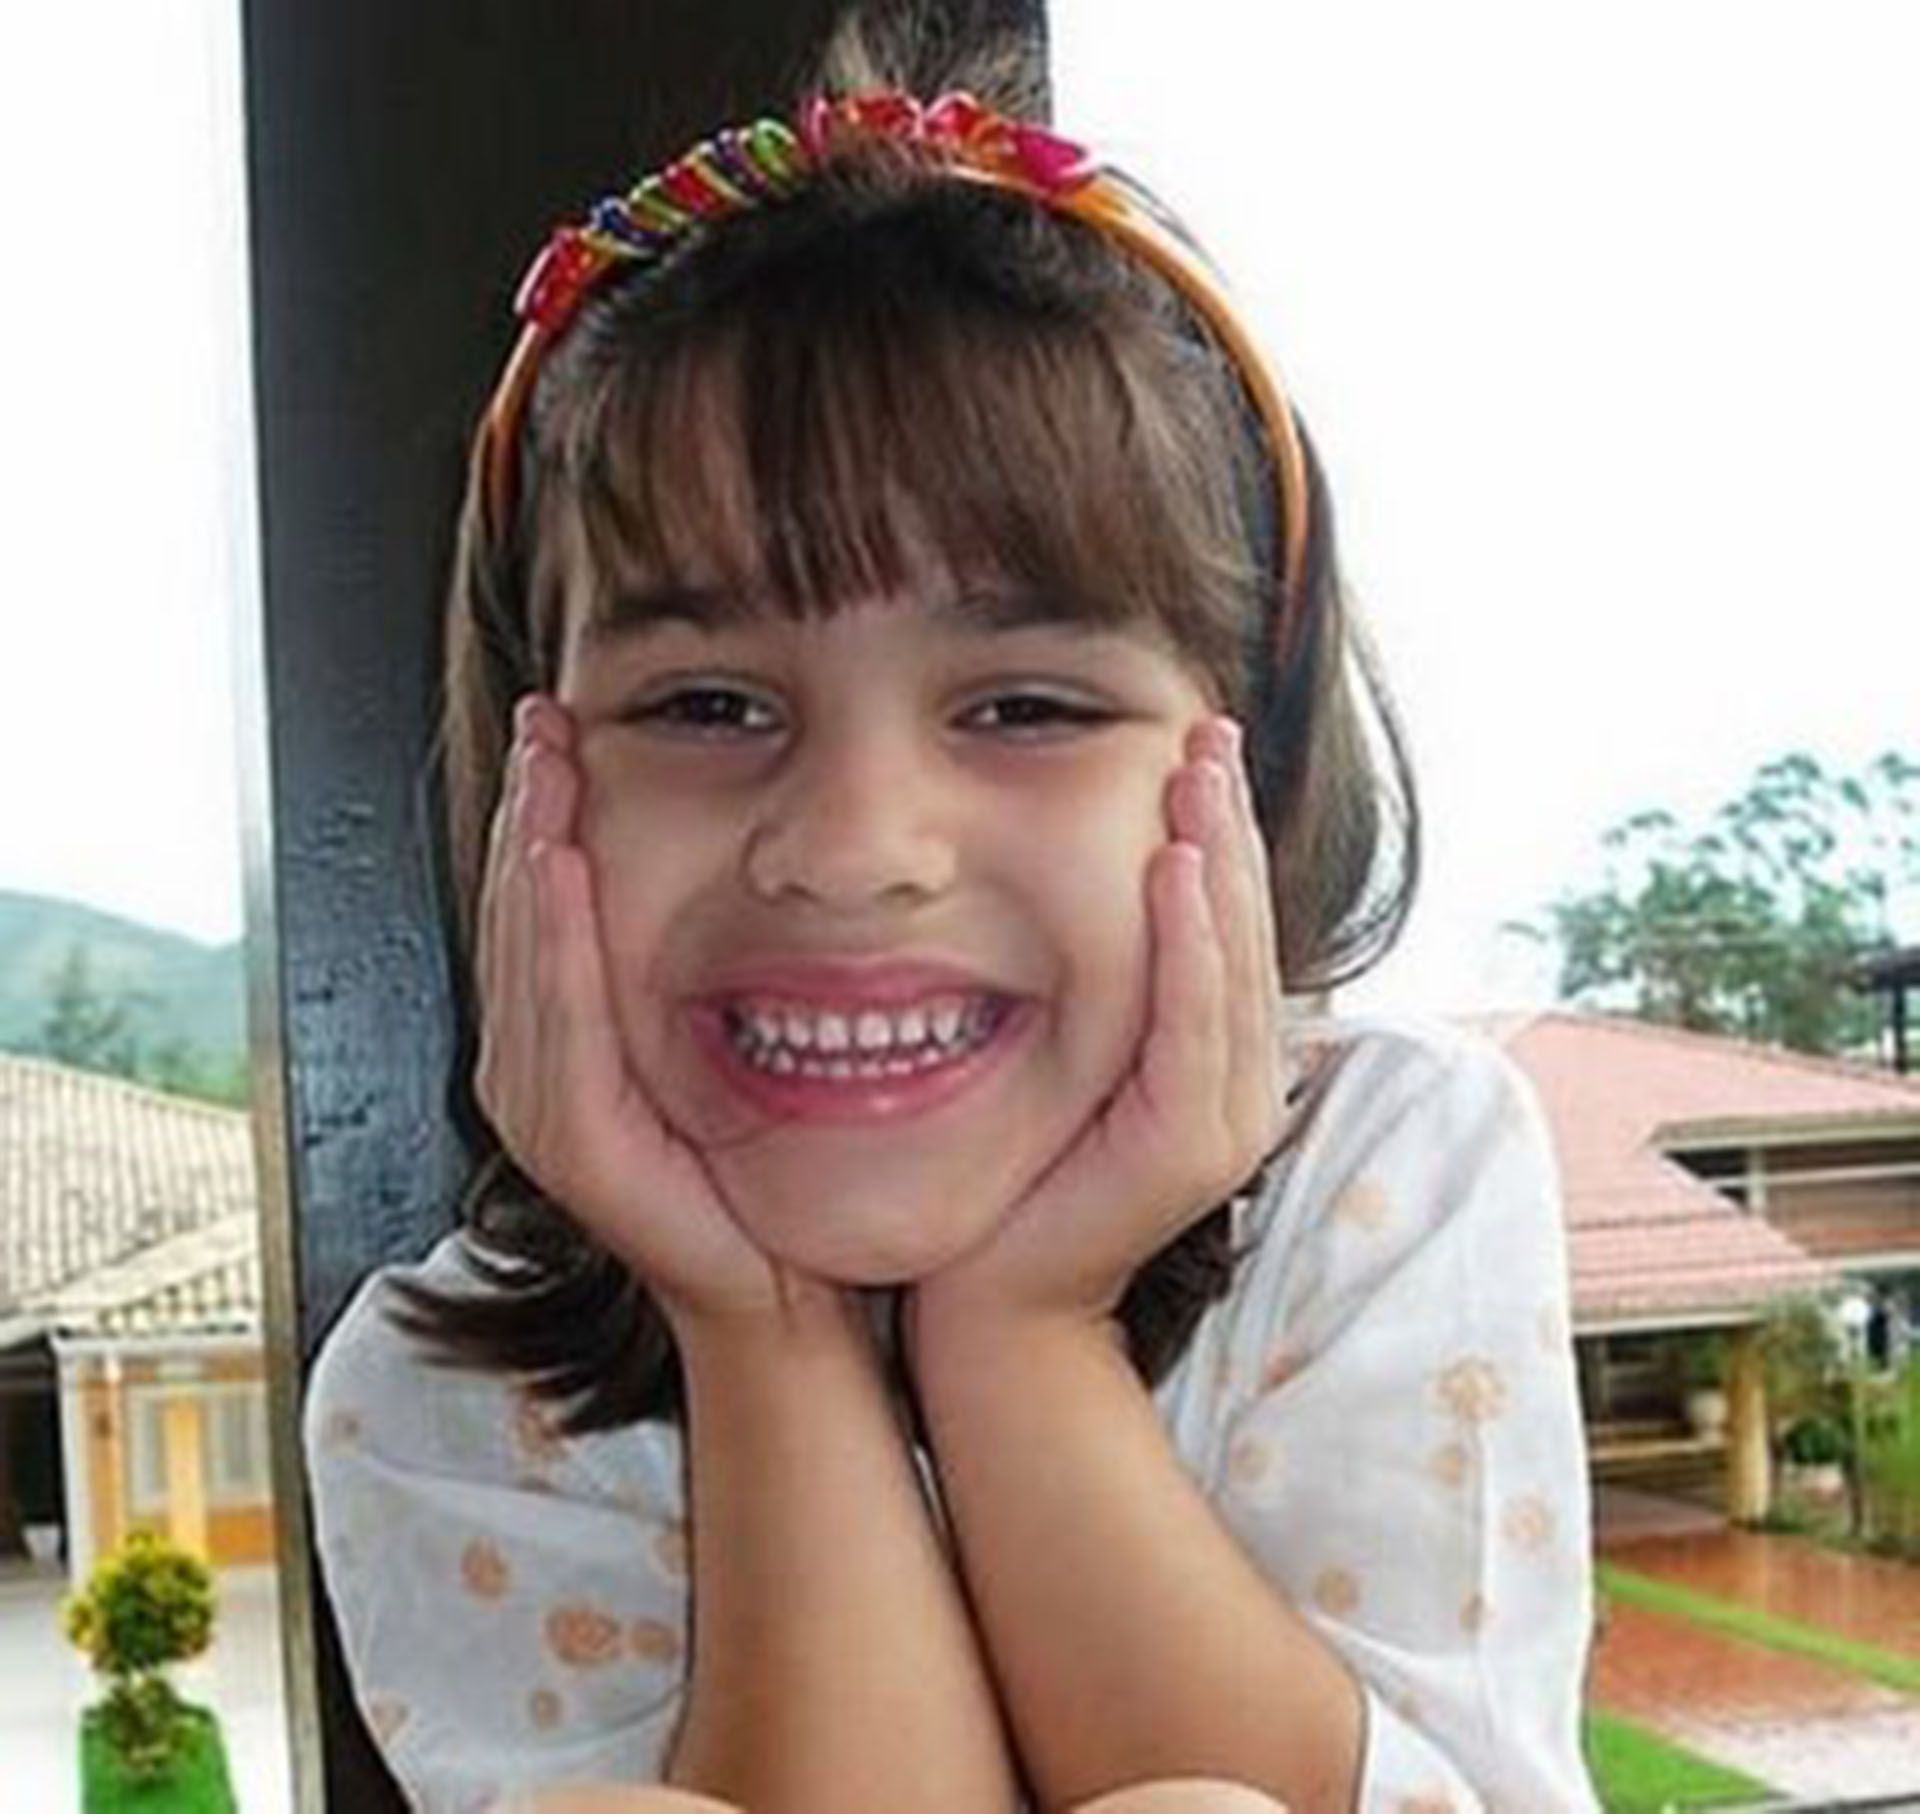 La noche del 29 de marzo de 2008, la pequeña de 5 años murió luego caer desde el sexto piso del edificio en el que vivía su padre Alexandre Alves Nardoni y su pareja, Ana Carolina Jatobá